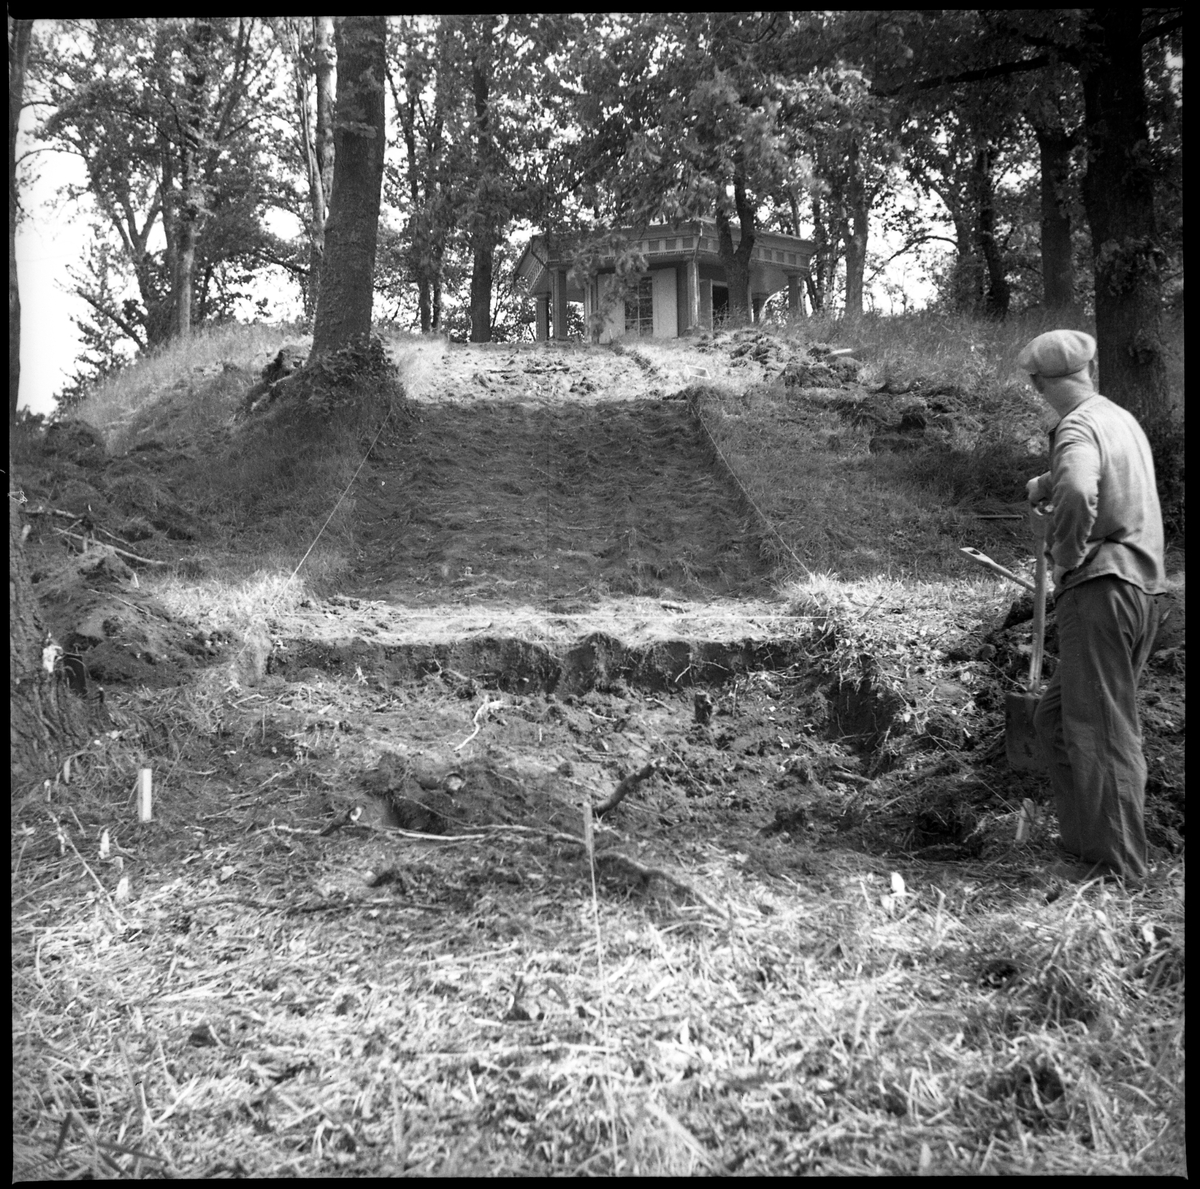 Avtorvningen av Schakt D genom södra delen av borgkullen vid Rumlaborg i Huskvarna är avklarad och fortsatta grävningar kan ta vid. På borgkullens topp skymtar lusthuset och vid sidan av står en man med spade. Bilden togs i samband med arkeologiska undersökningar vid borgen sommaren 1938.